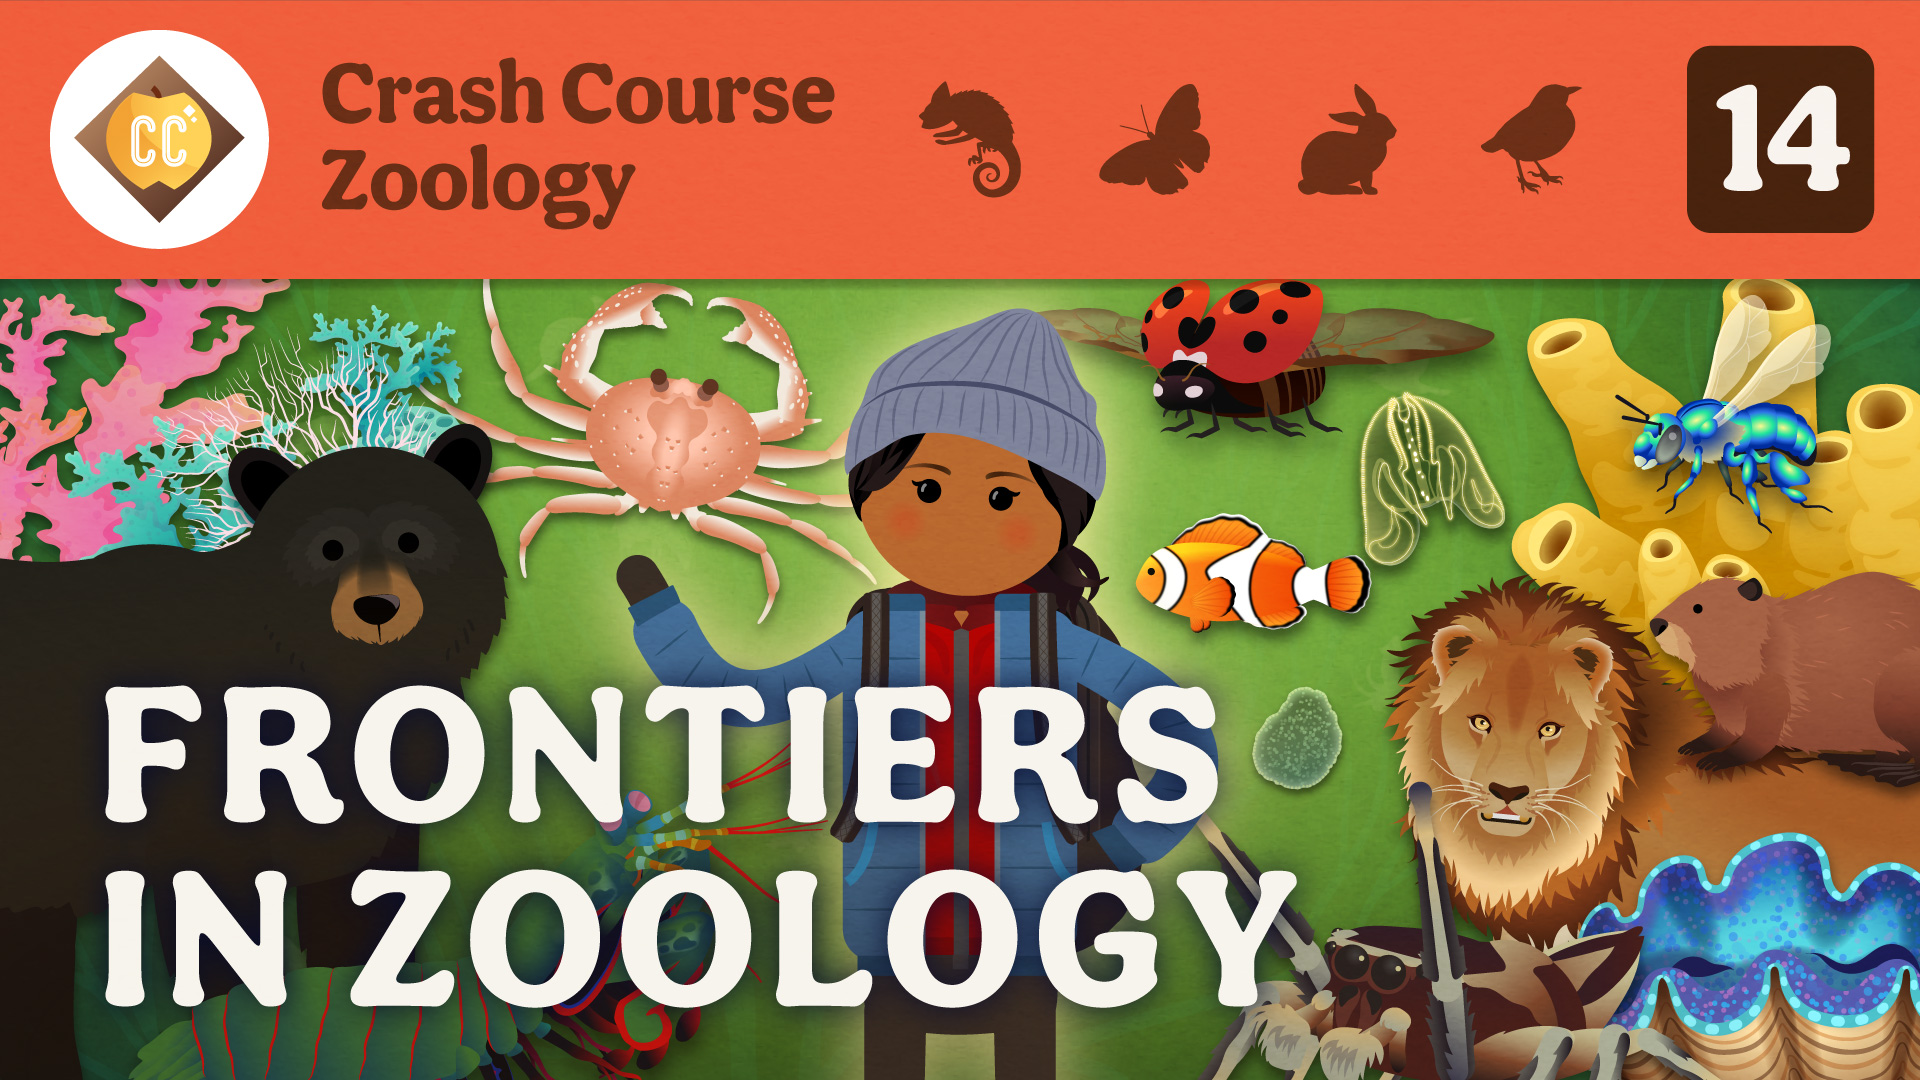 Crash Course Zoology